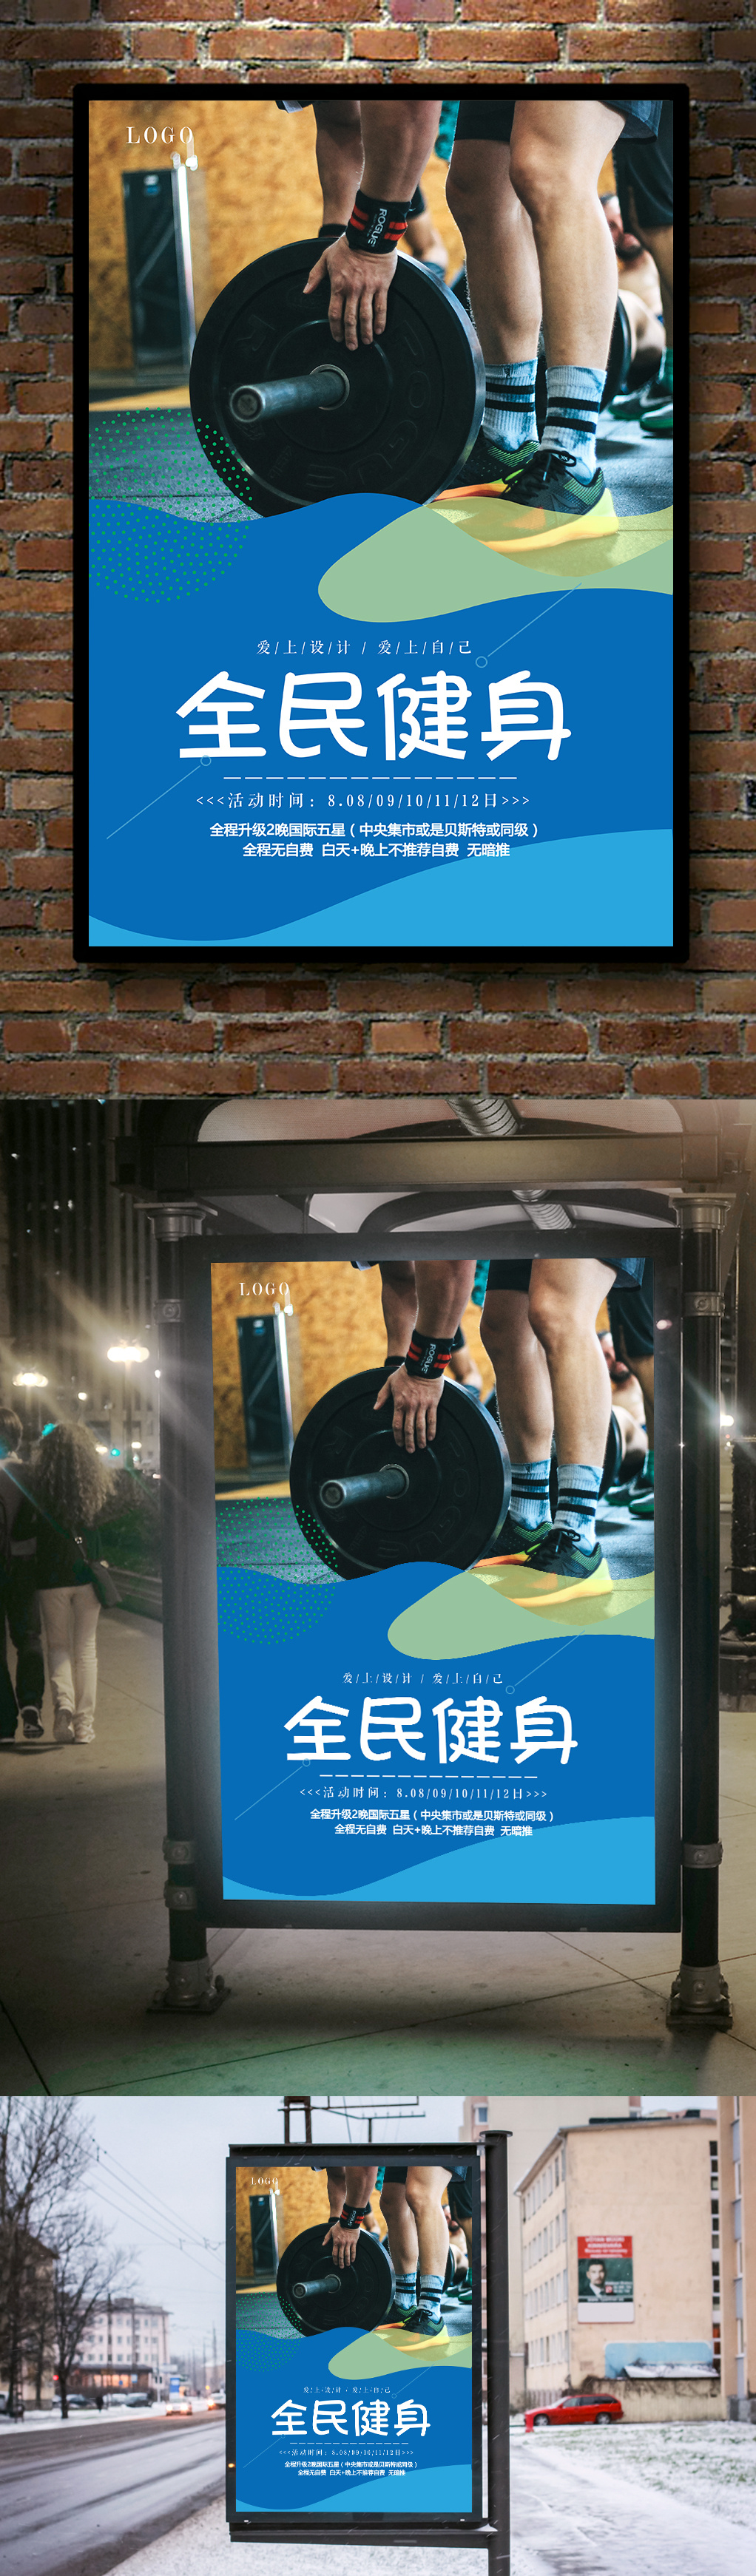 运动健身宣传海报模板设计